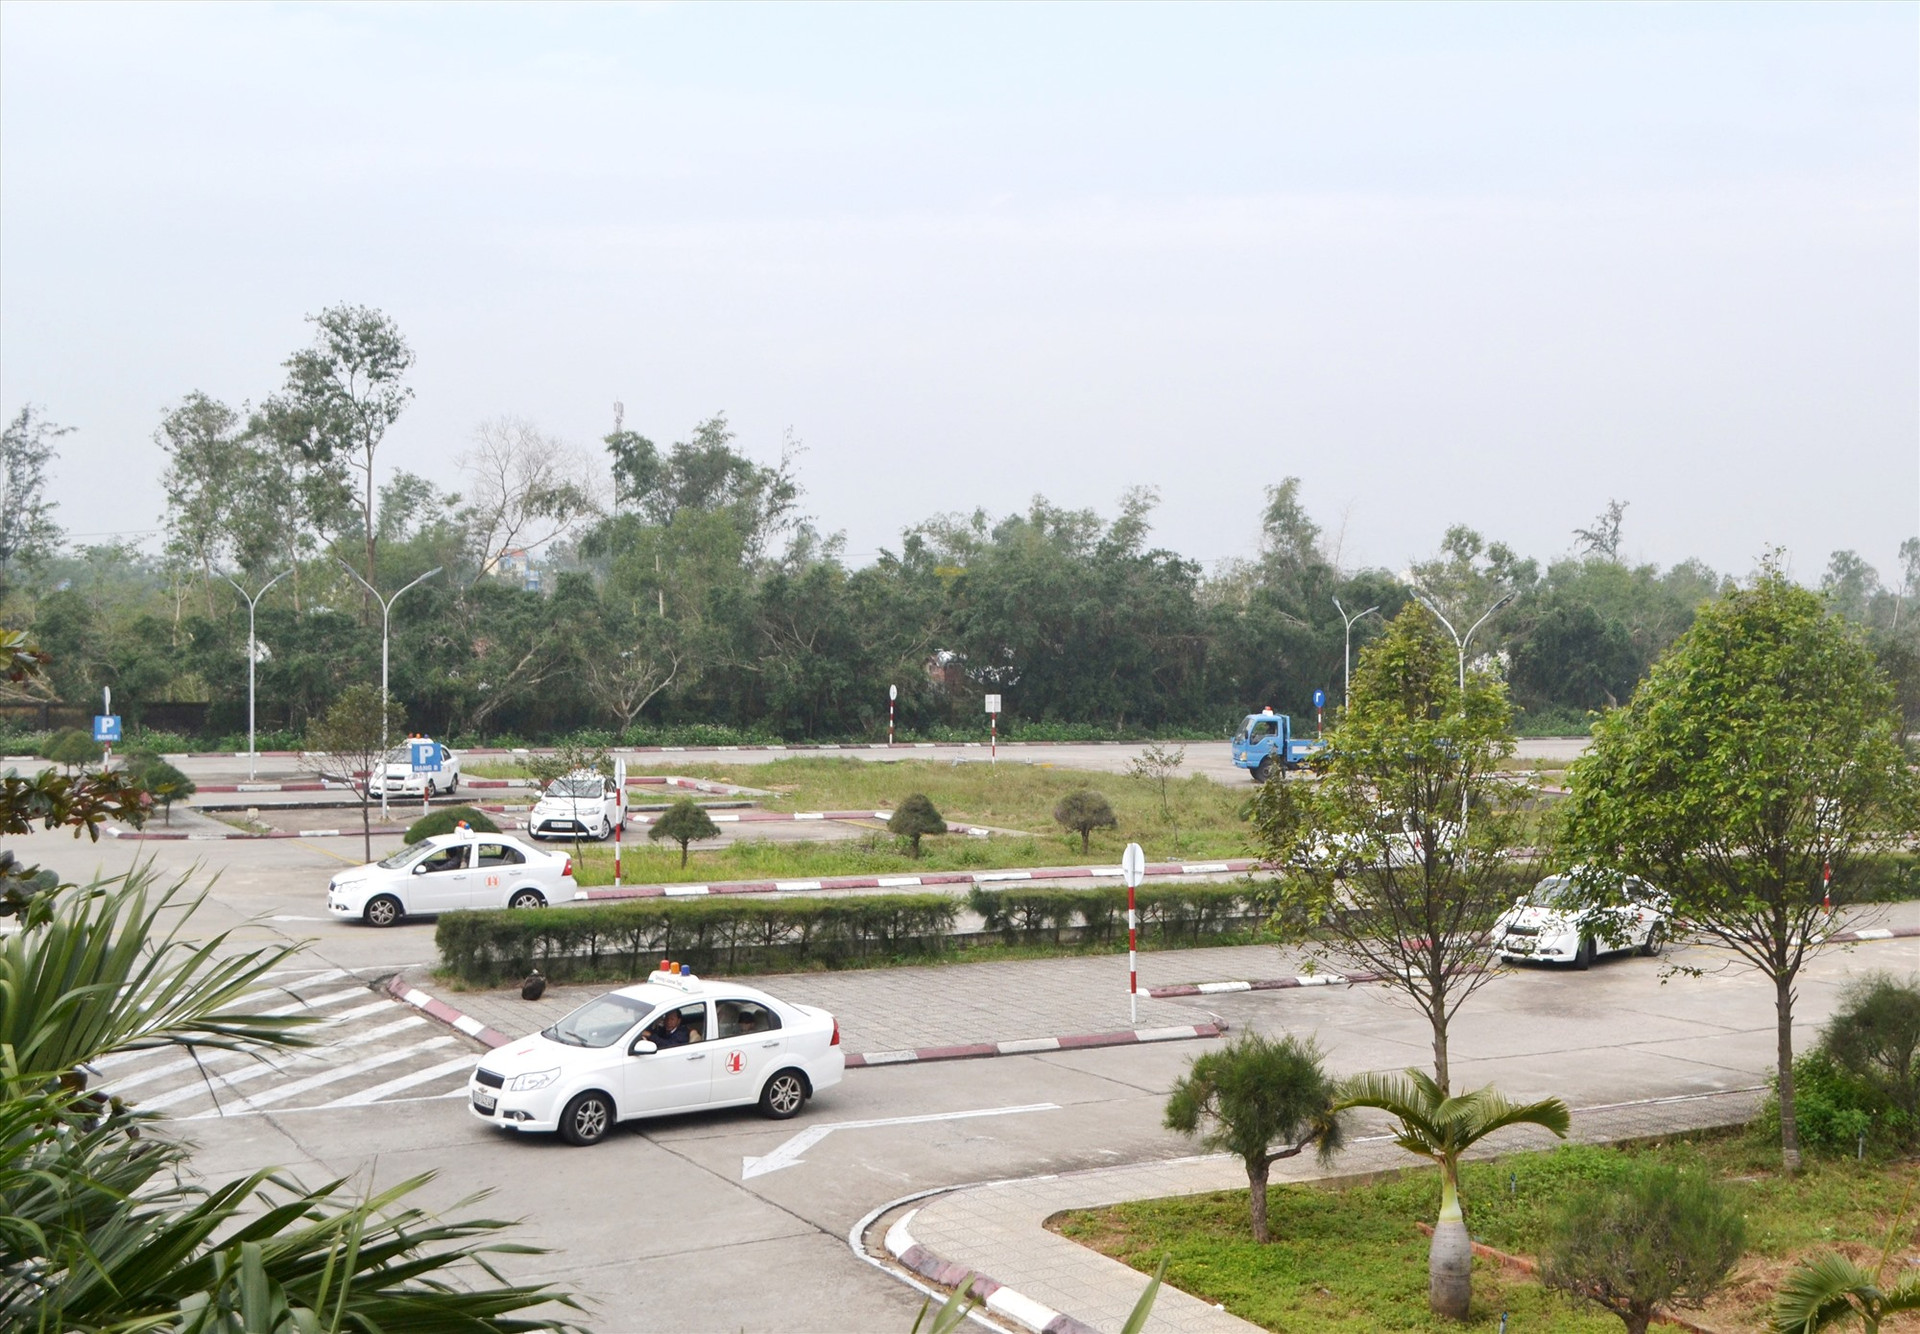 Trung tâm sát hạch lái xe Quảng Nam (đóng tại Thăng Bình) là địa điểm được Sở GTVT chọn tổ chức nhiều khóa sát hạch lái xe. Ảnh: C.T